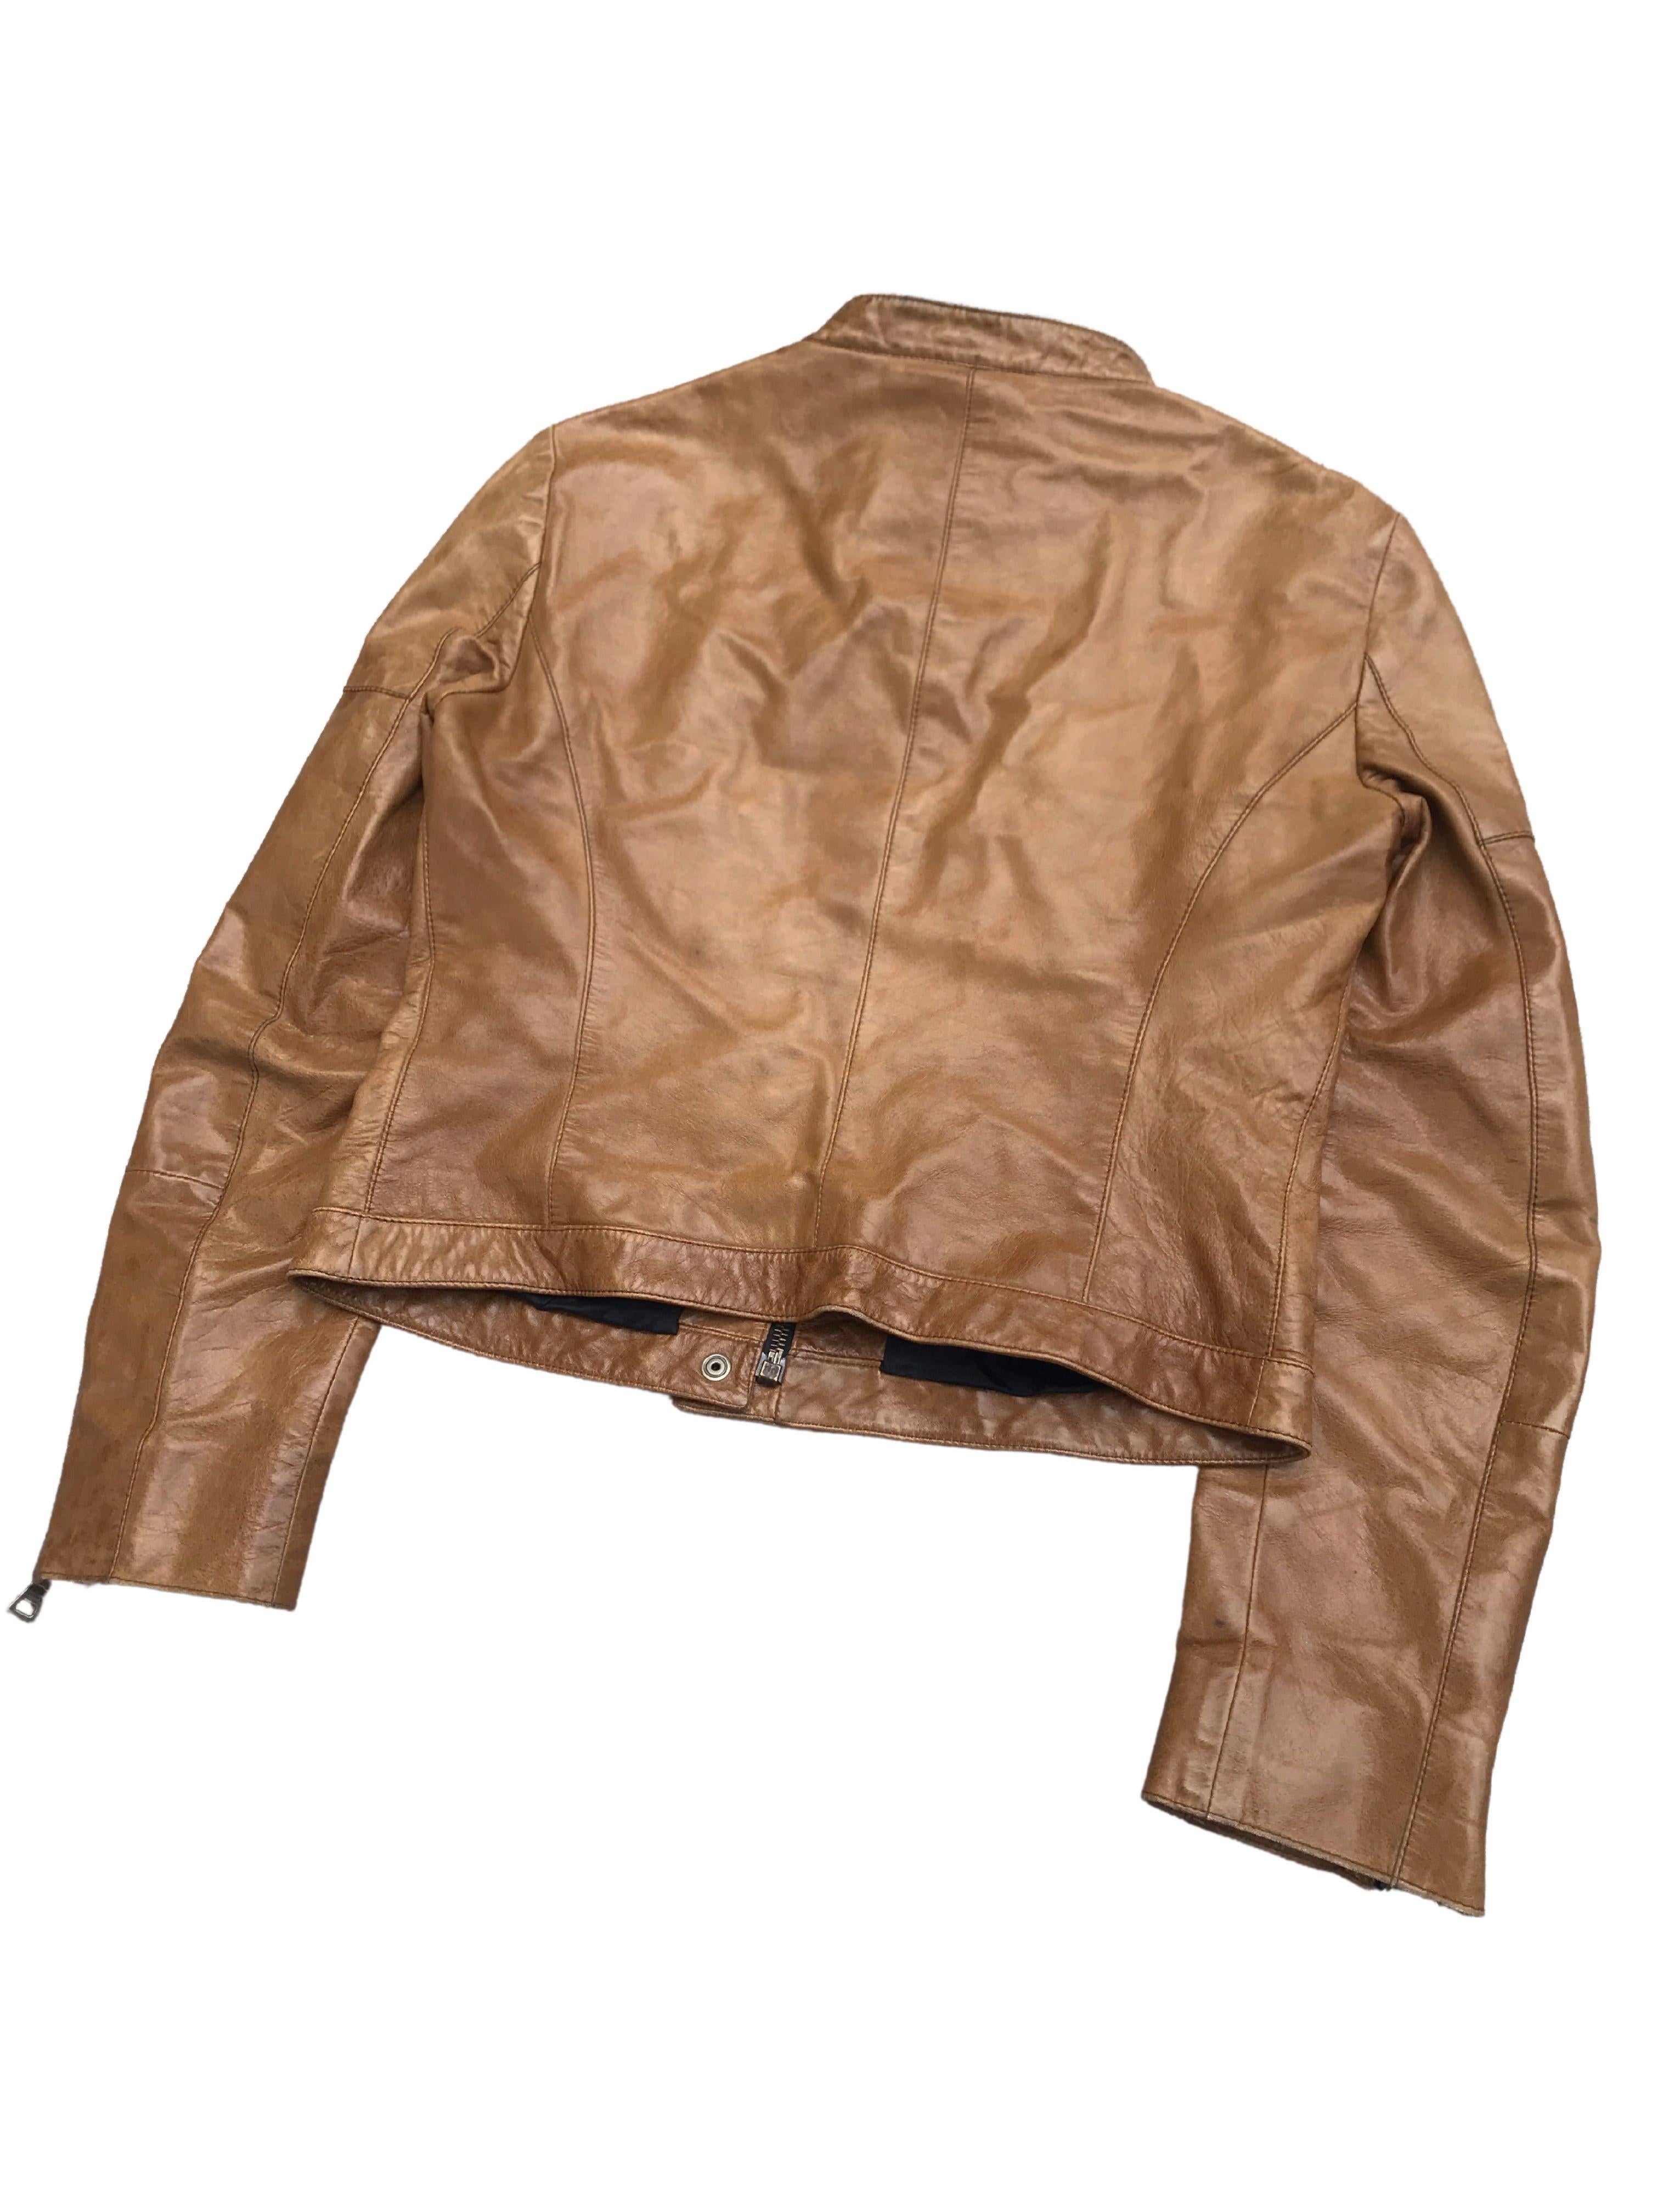 Vintage Prada Brown Cropped Leather Jacket, 1990's